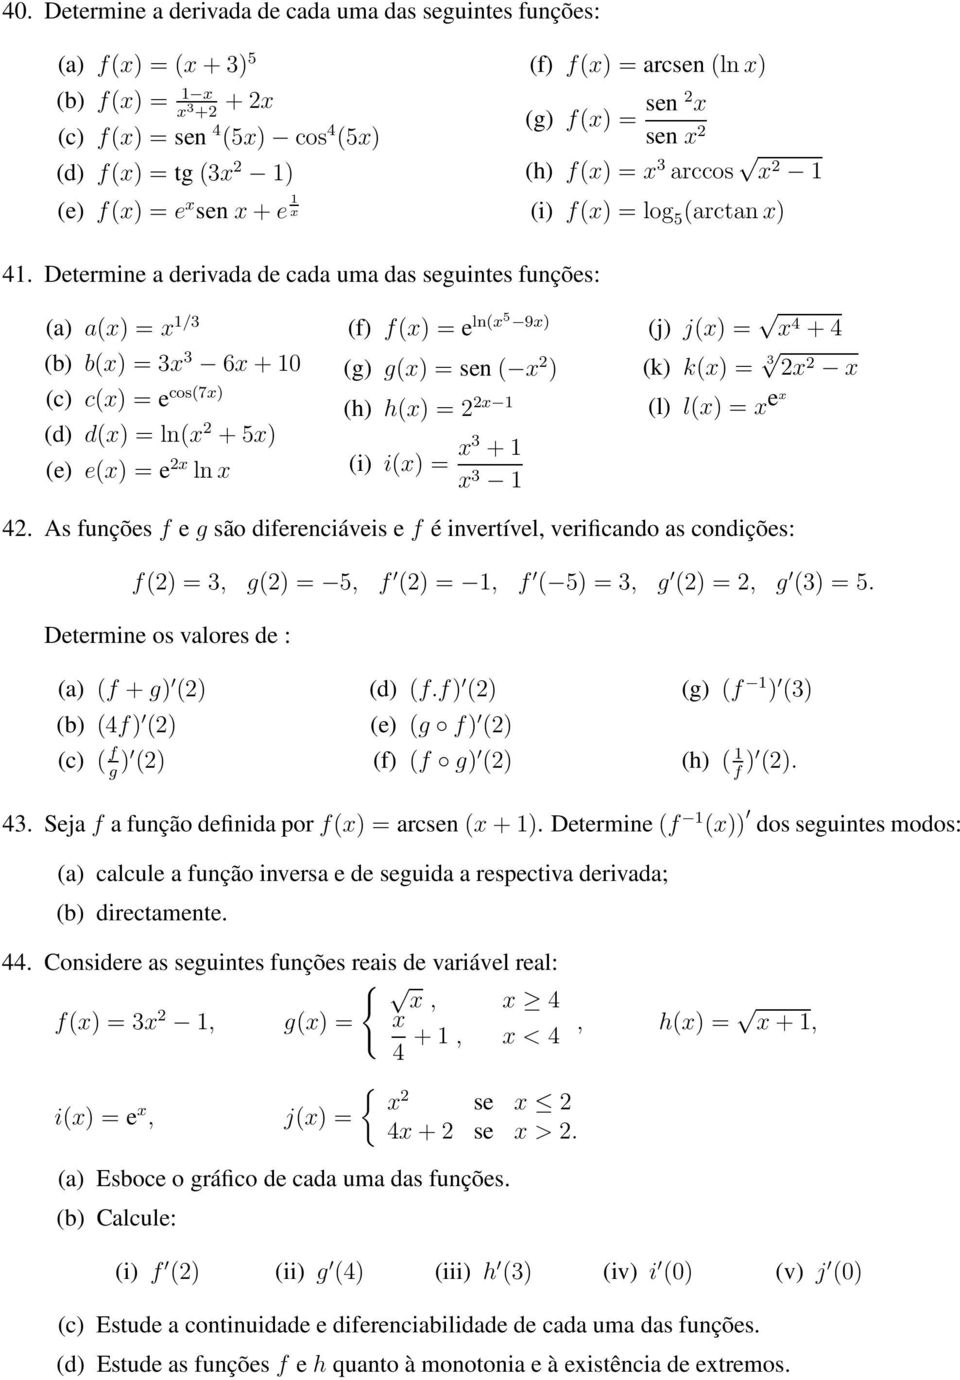 Determine a derivada de cada uma das seguintes funções: (a) a() = /3 (b) b() = 3 3 6+0 (c) c() = e cos(7) (d) d() = ln( +5) (e) e() = e ln (f) f() = e ln(5 9) (g) g() = sen( ) (h) h() = (i) i() = 3 +